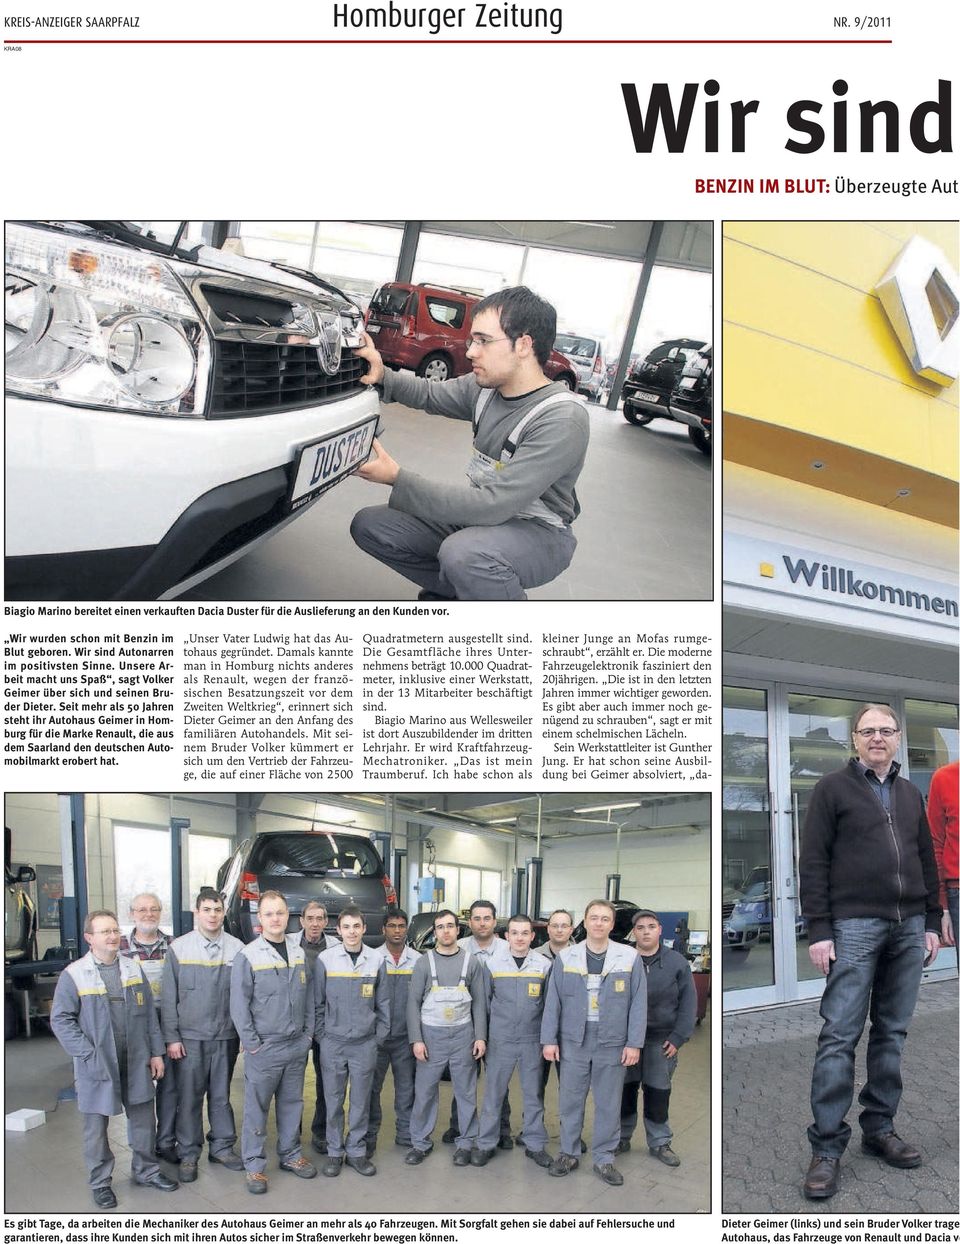 Seit mehr als 50 Jahren steht ihr Autohaus Geimer in Homburg für die Marke Renault, die aus dem Saarland den deutschen Automobilmarkt erobert hat. Unser Vater Ludwig hat das Autohaus gegründet.